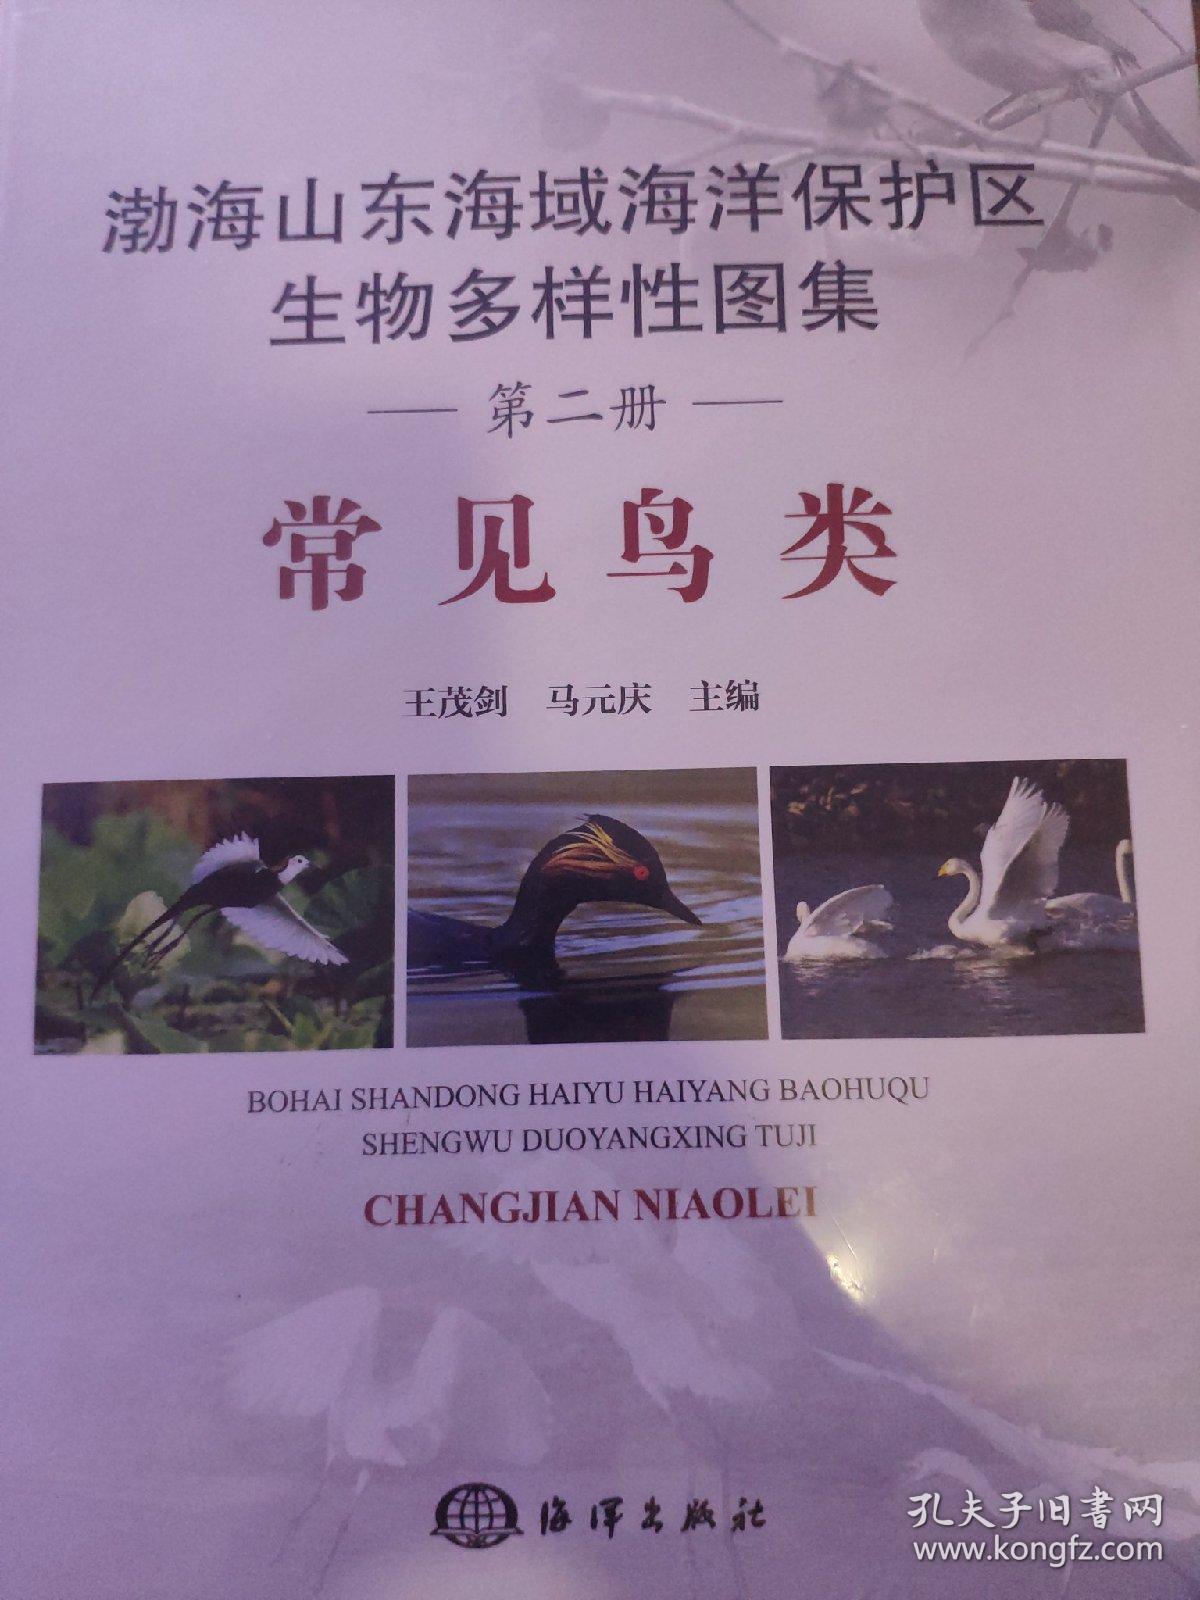 渤海山东海域海洋保护区生物多样性图集——常见鸟类